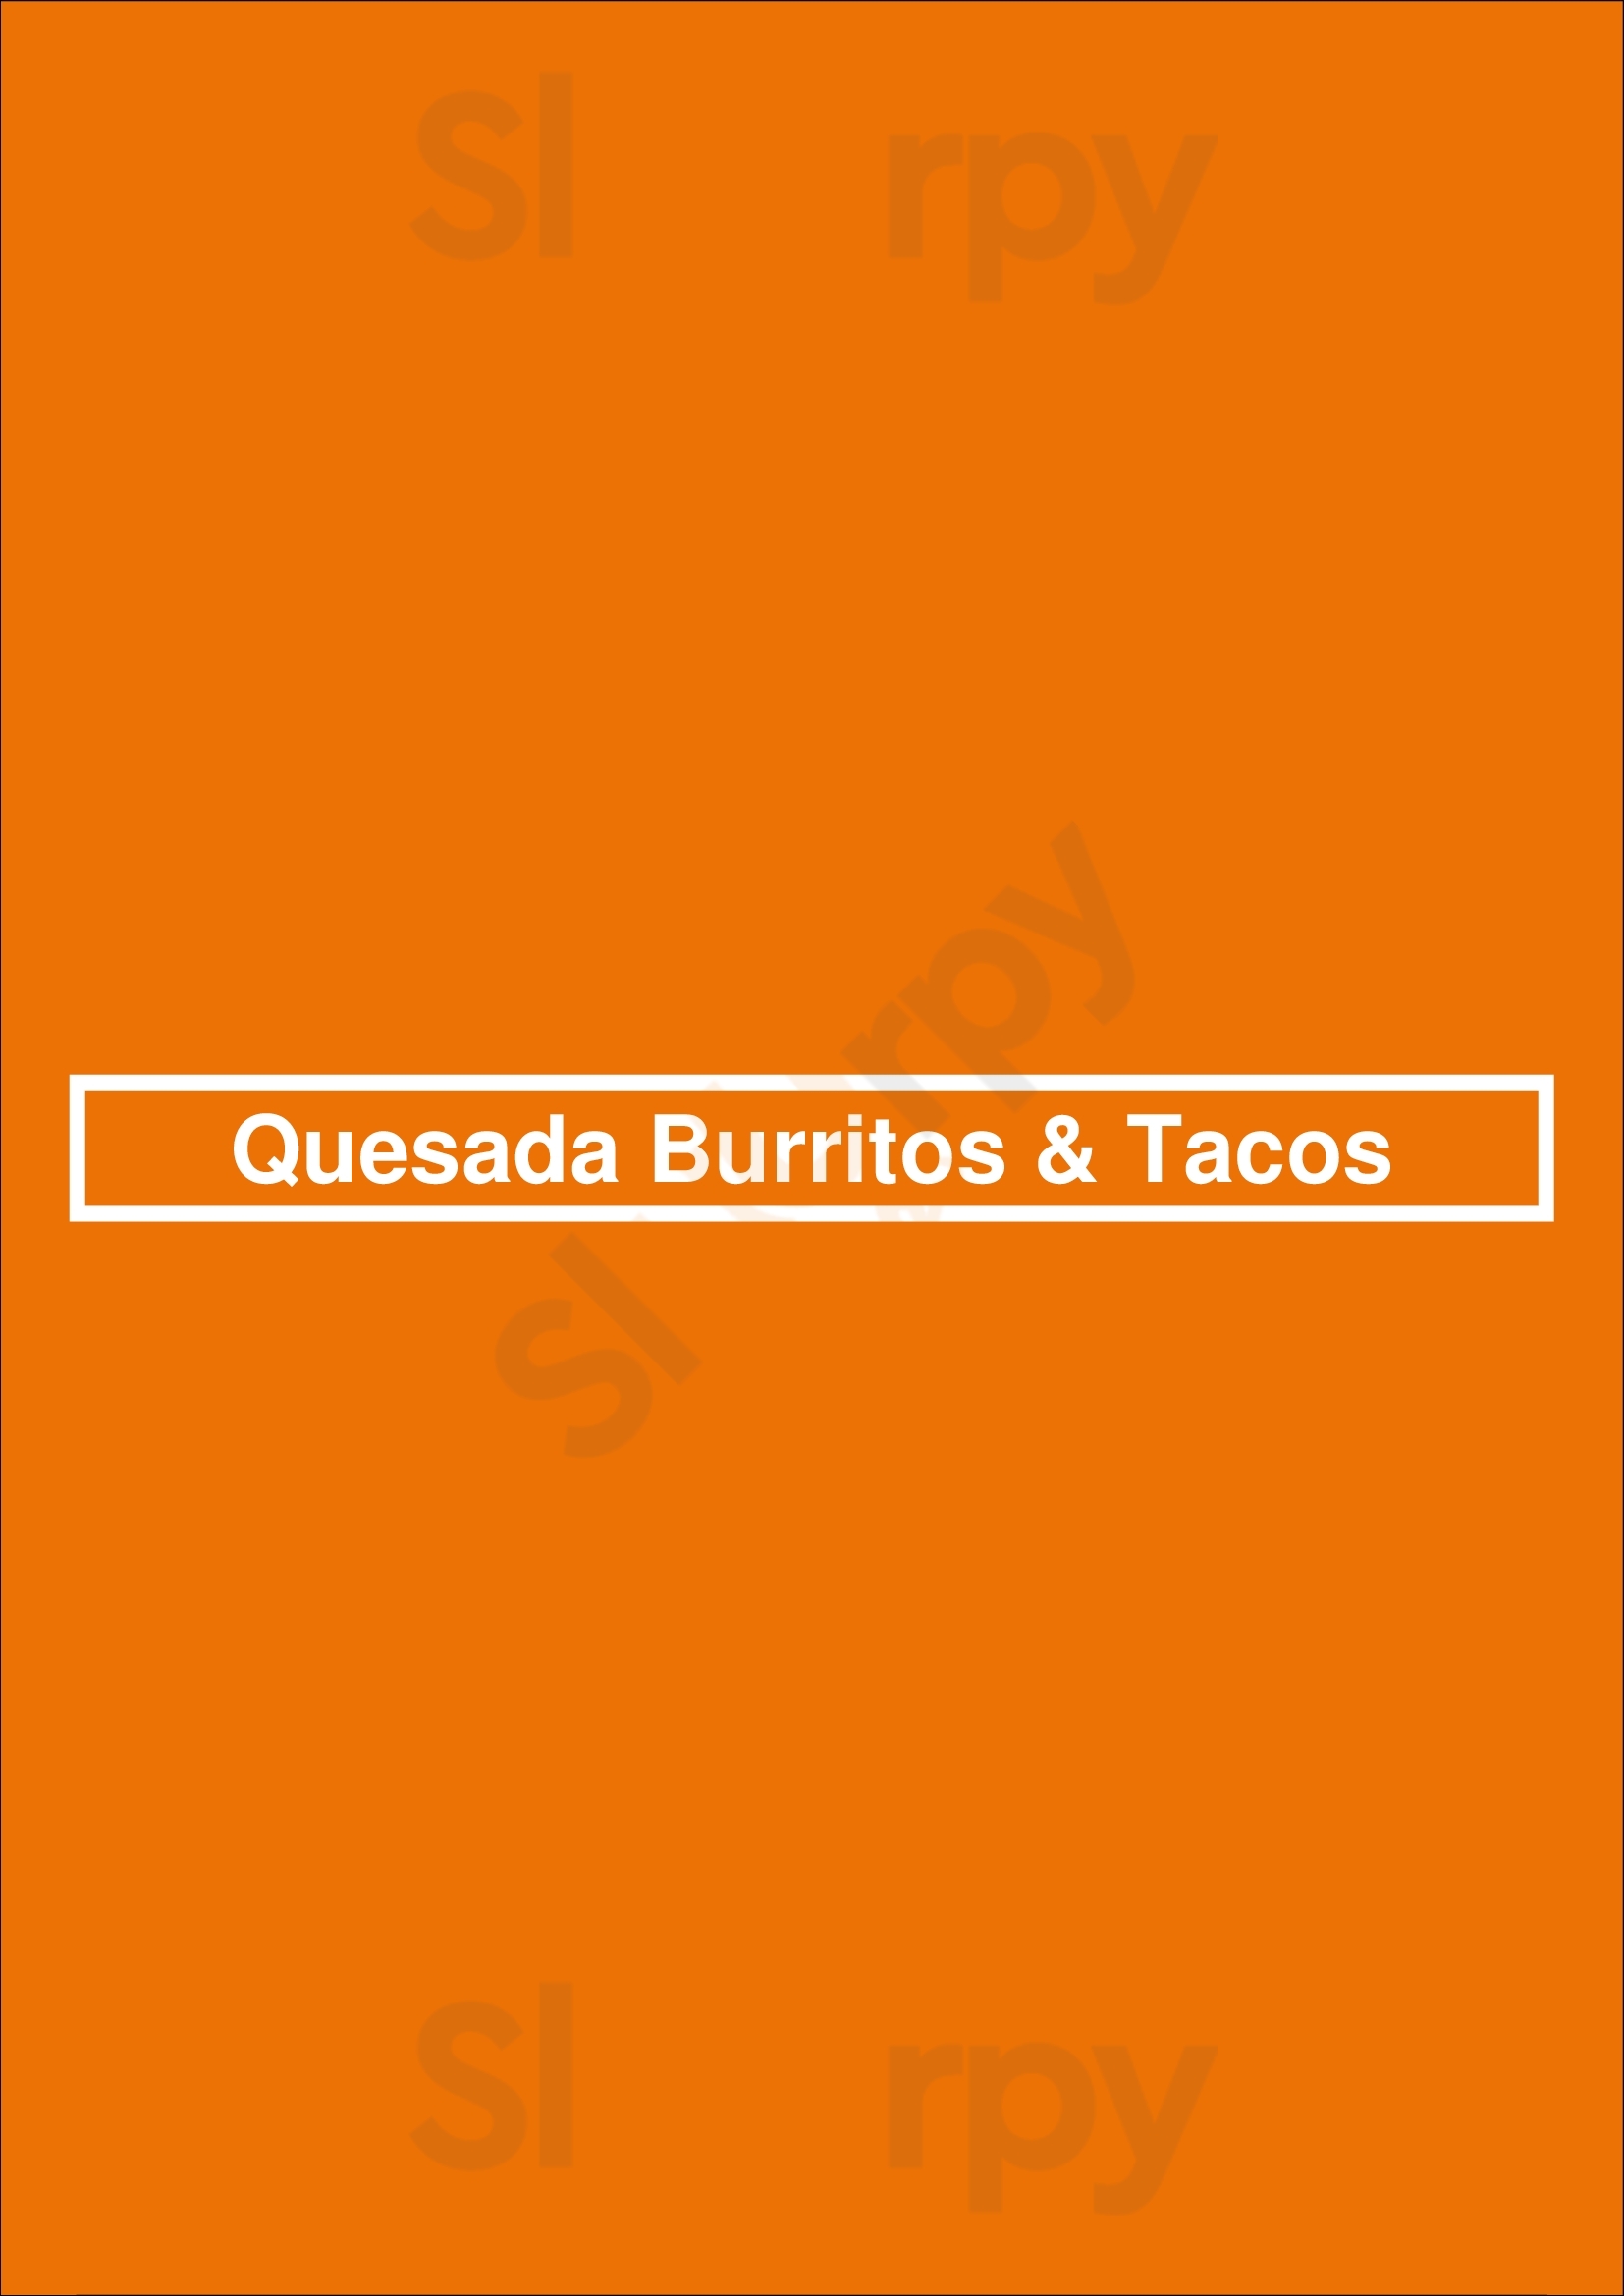 Quesada Burritos & Tacos Hamilton Menu - 1